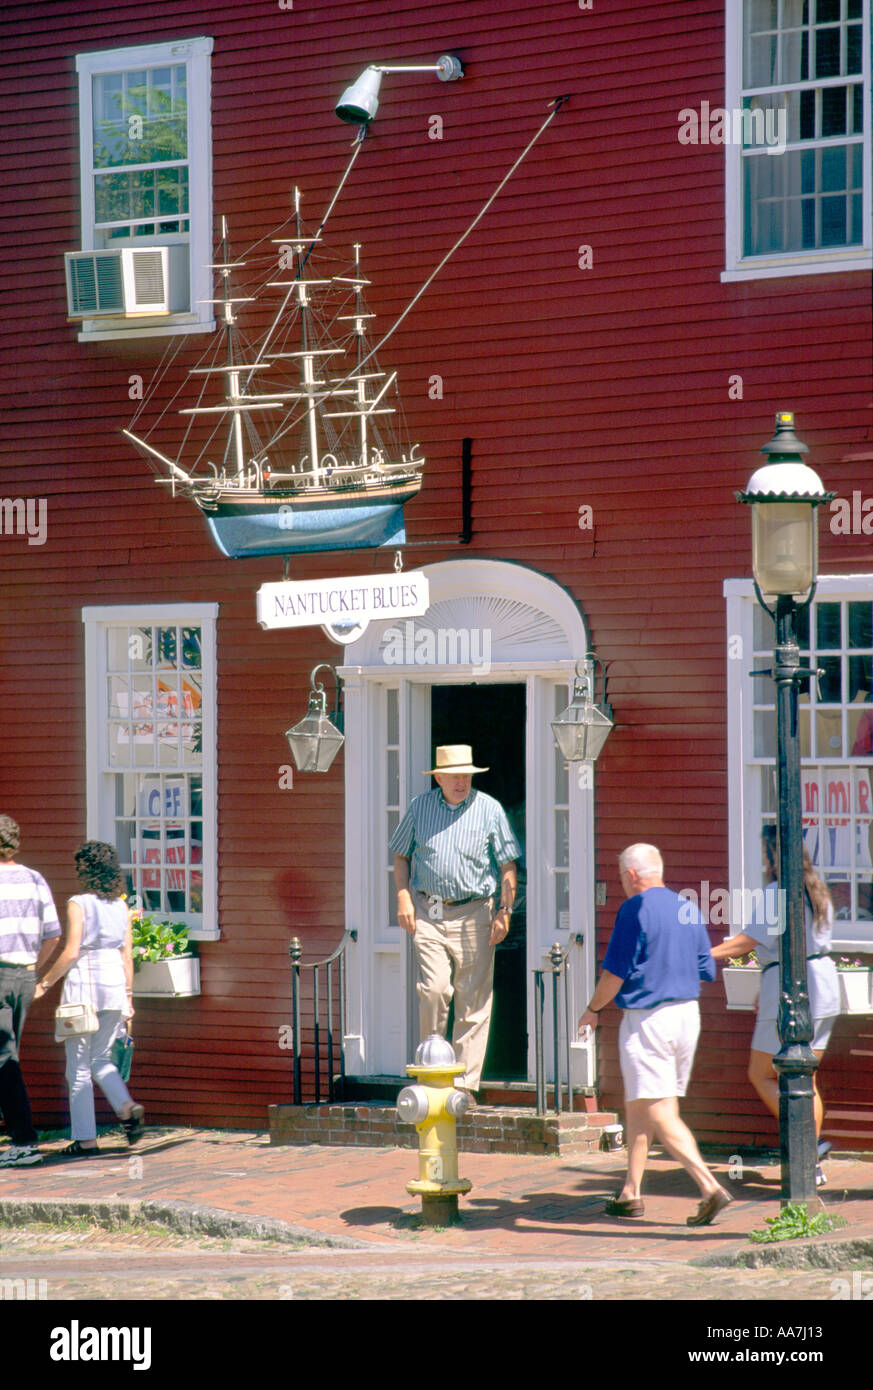 Nantucket città di Nantucket Island off Cape Cod, Massachusetts, STATI UNITI D'AMERICA. Shop boutique sulla strada principale con il modello della caccia alla balena barca Foto Stock